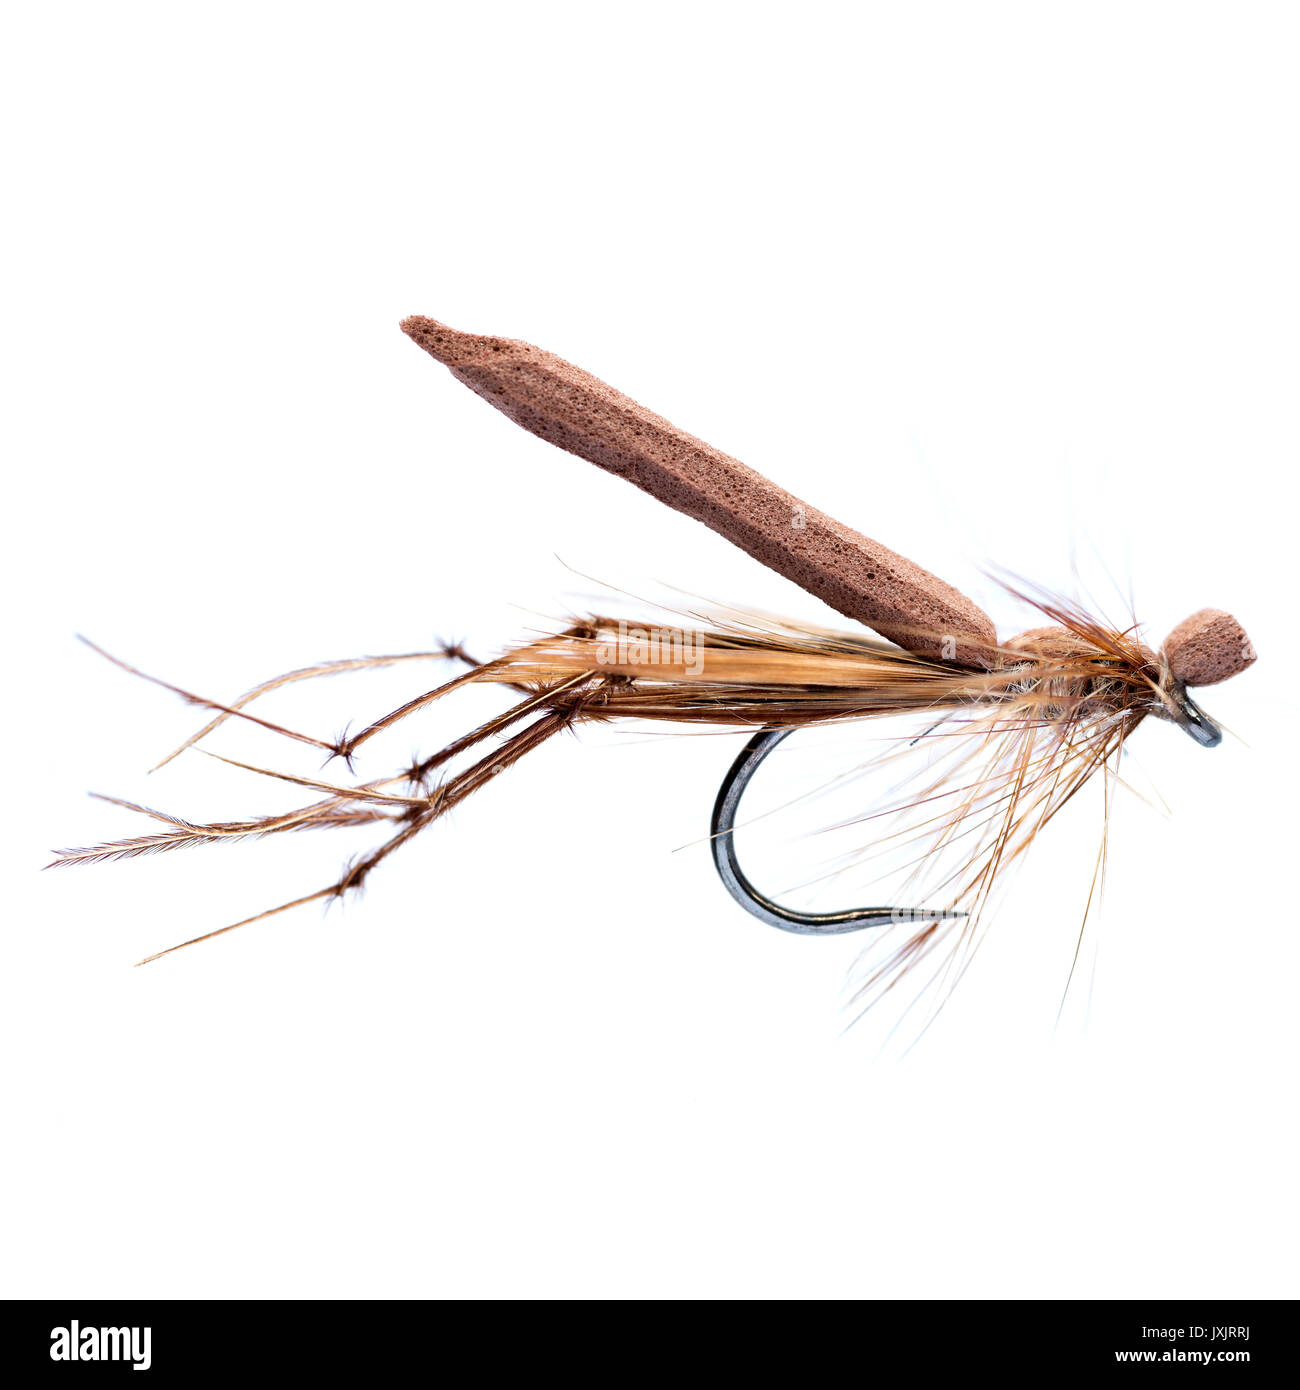 Papà gamba lunga - un bene sapere dry fly utilizzato di solito nei laghi per la trota iridea la pesca con la mosca. Foto Stock